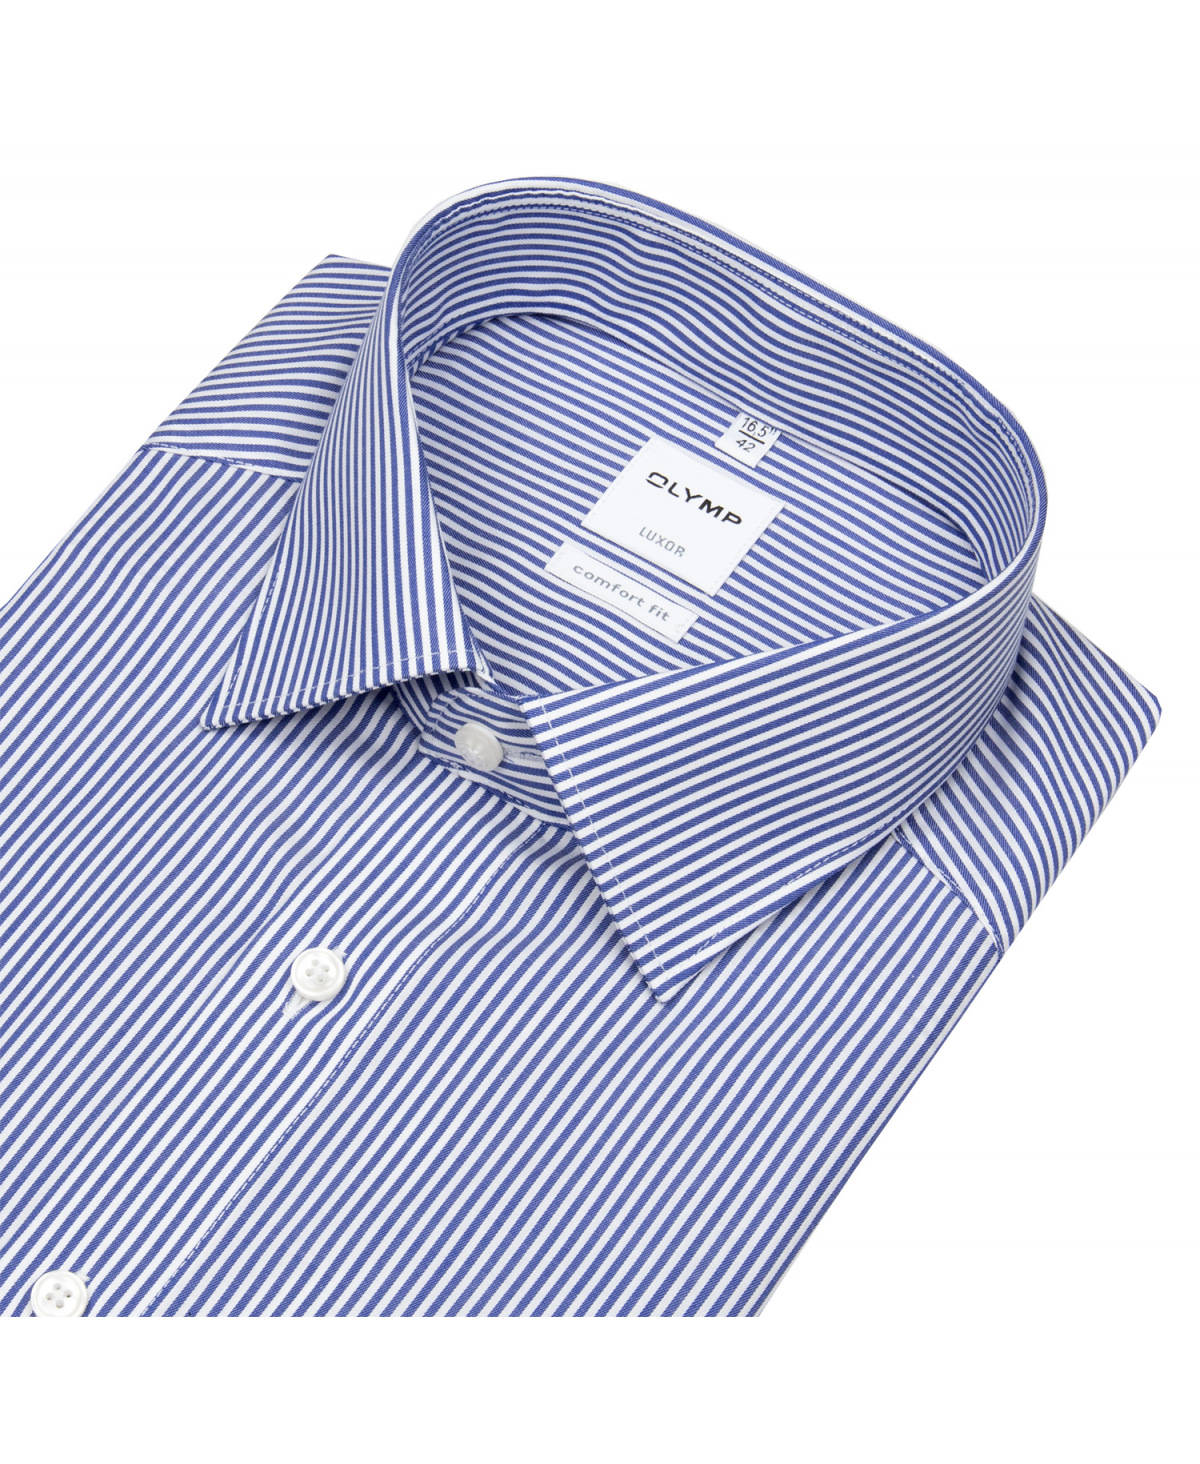 OLYMP - Streifen weiß / - Luxor - Comfort blau Hemd Fit - Twill